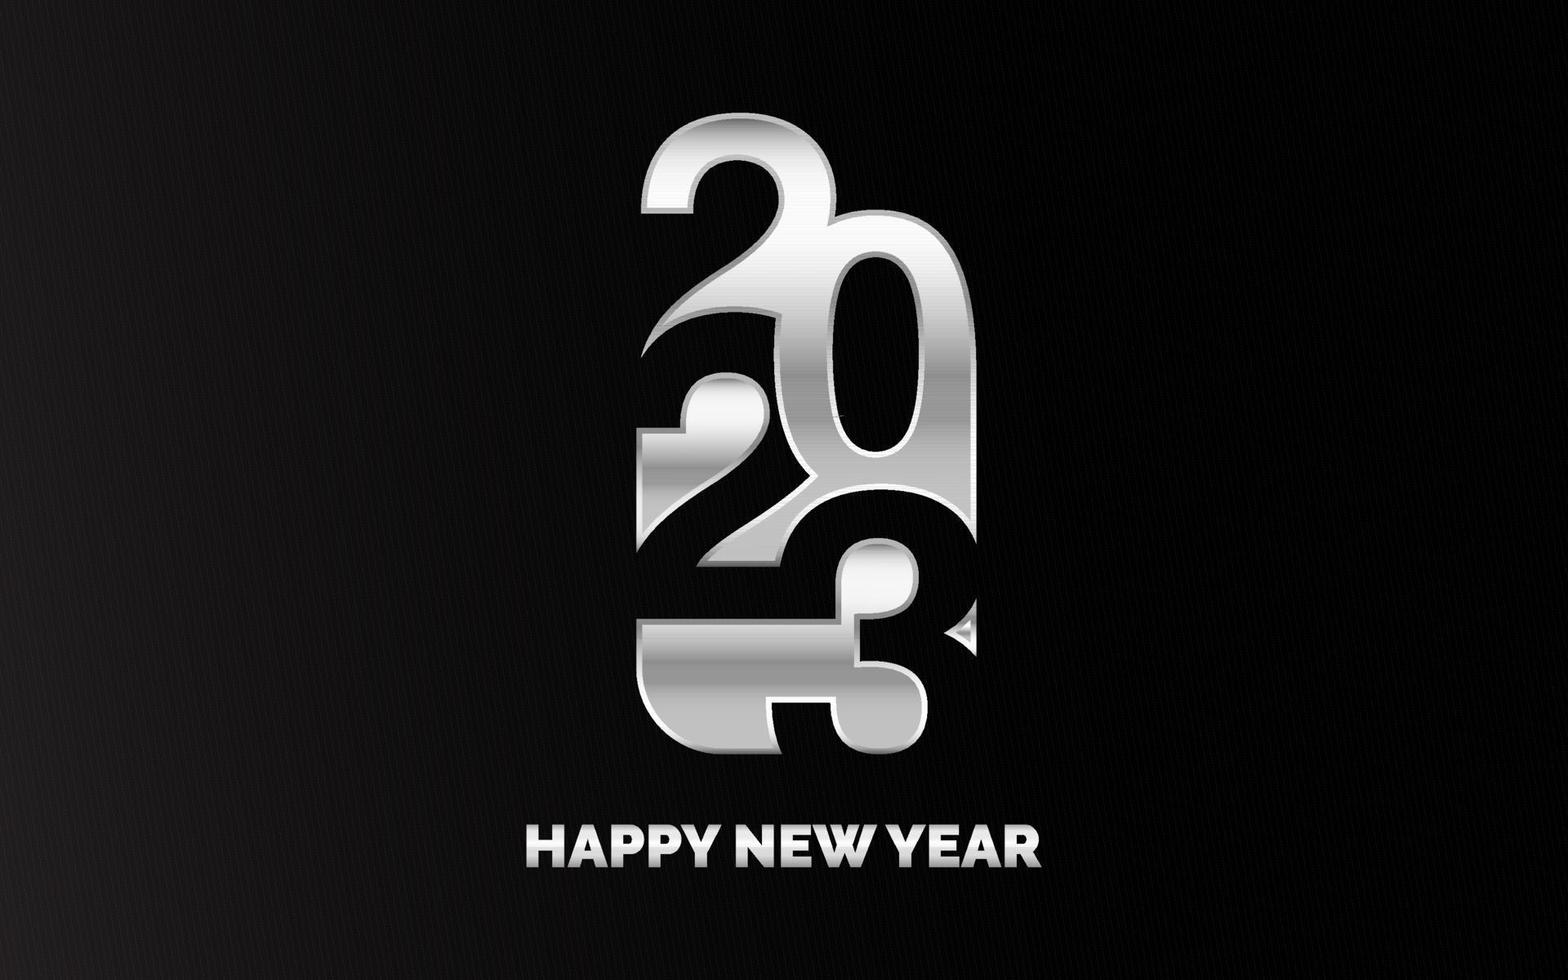 nuovo 2023 anno tipografia design. 2023 numeri logotipo illustrazione vettore